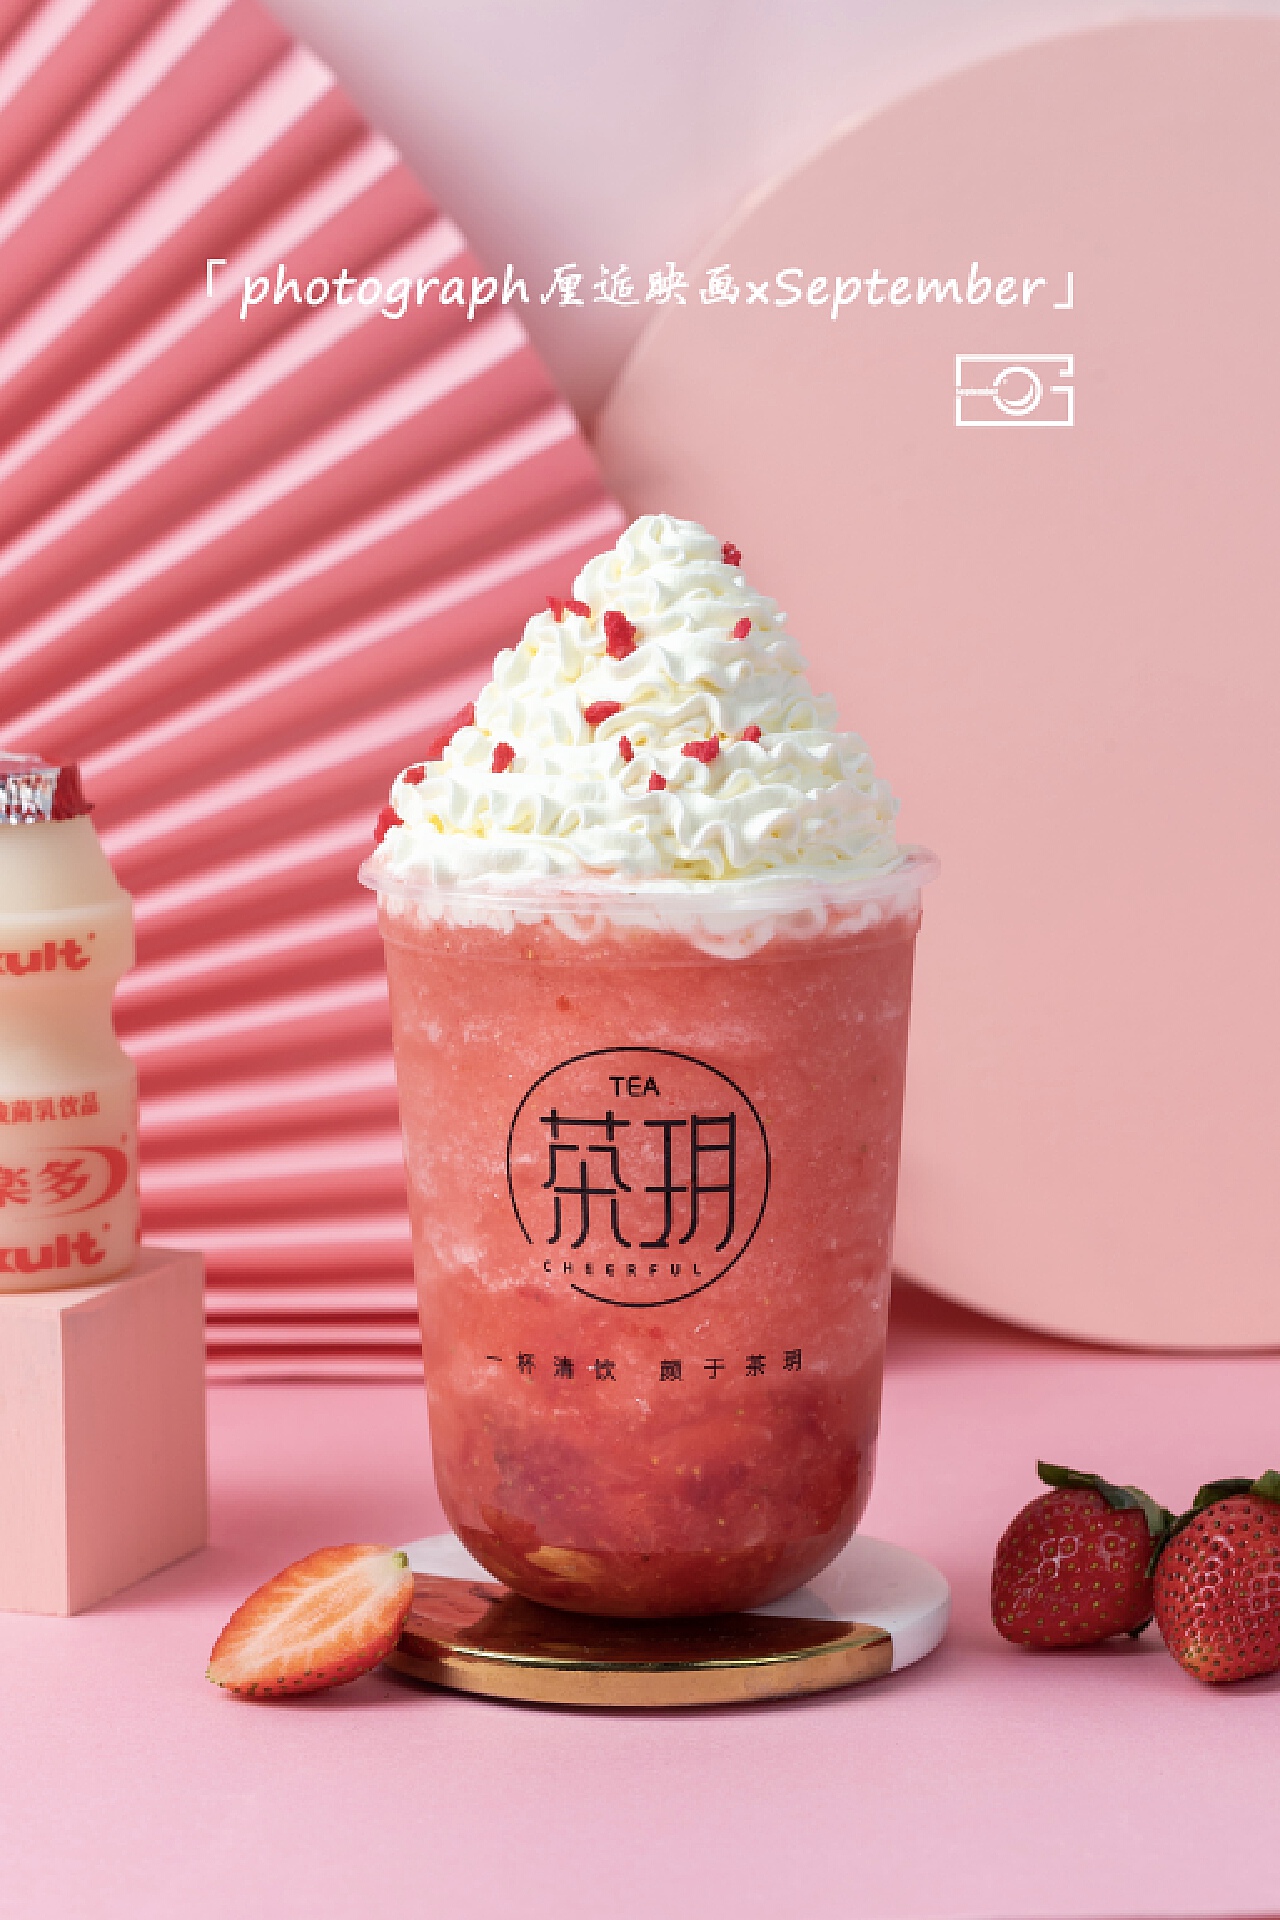 奶茶草莓素材-奶茶草莓模板-奶茶草莓图片免费下载-设图网